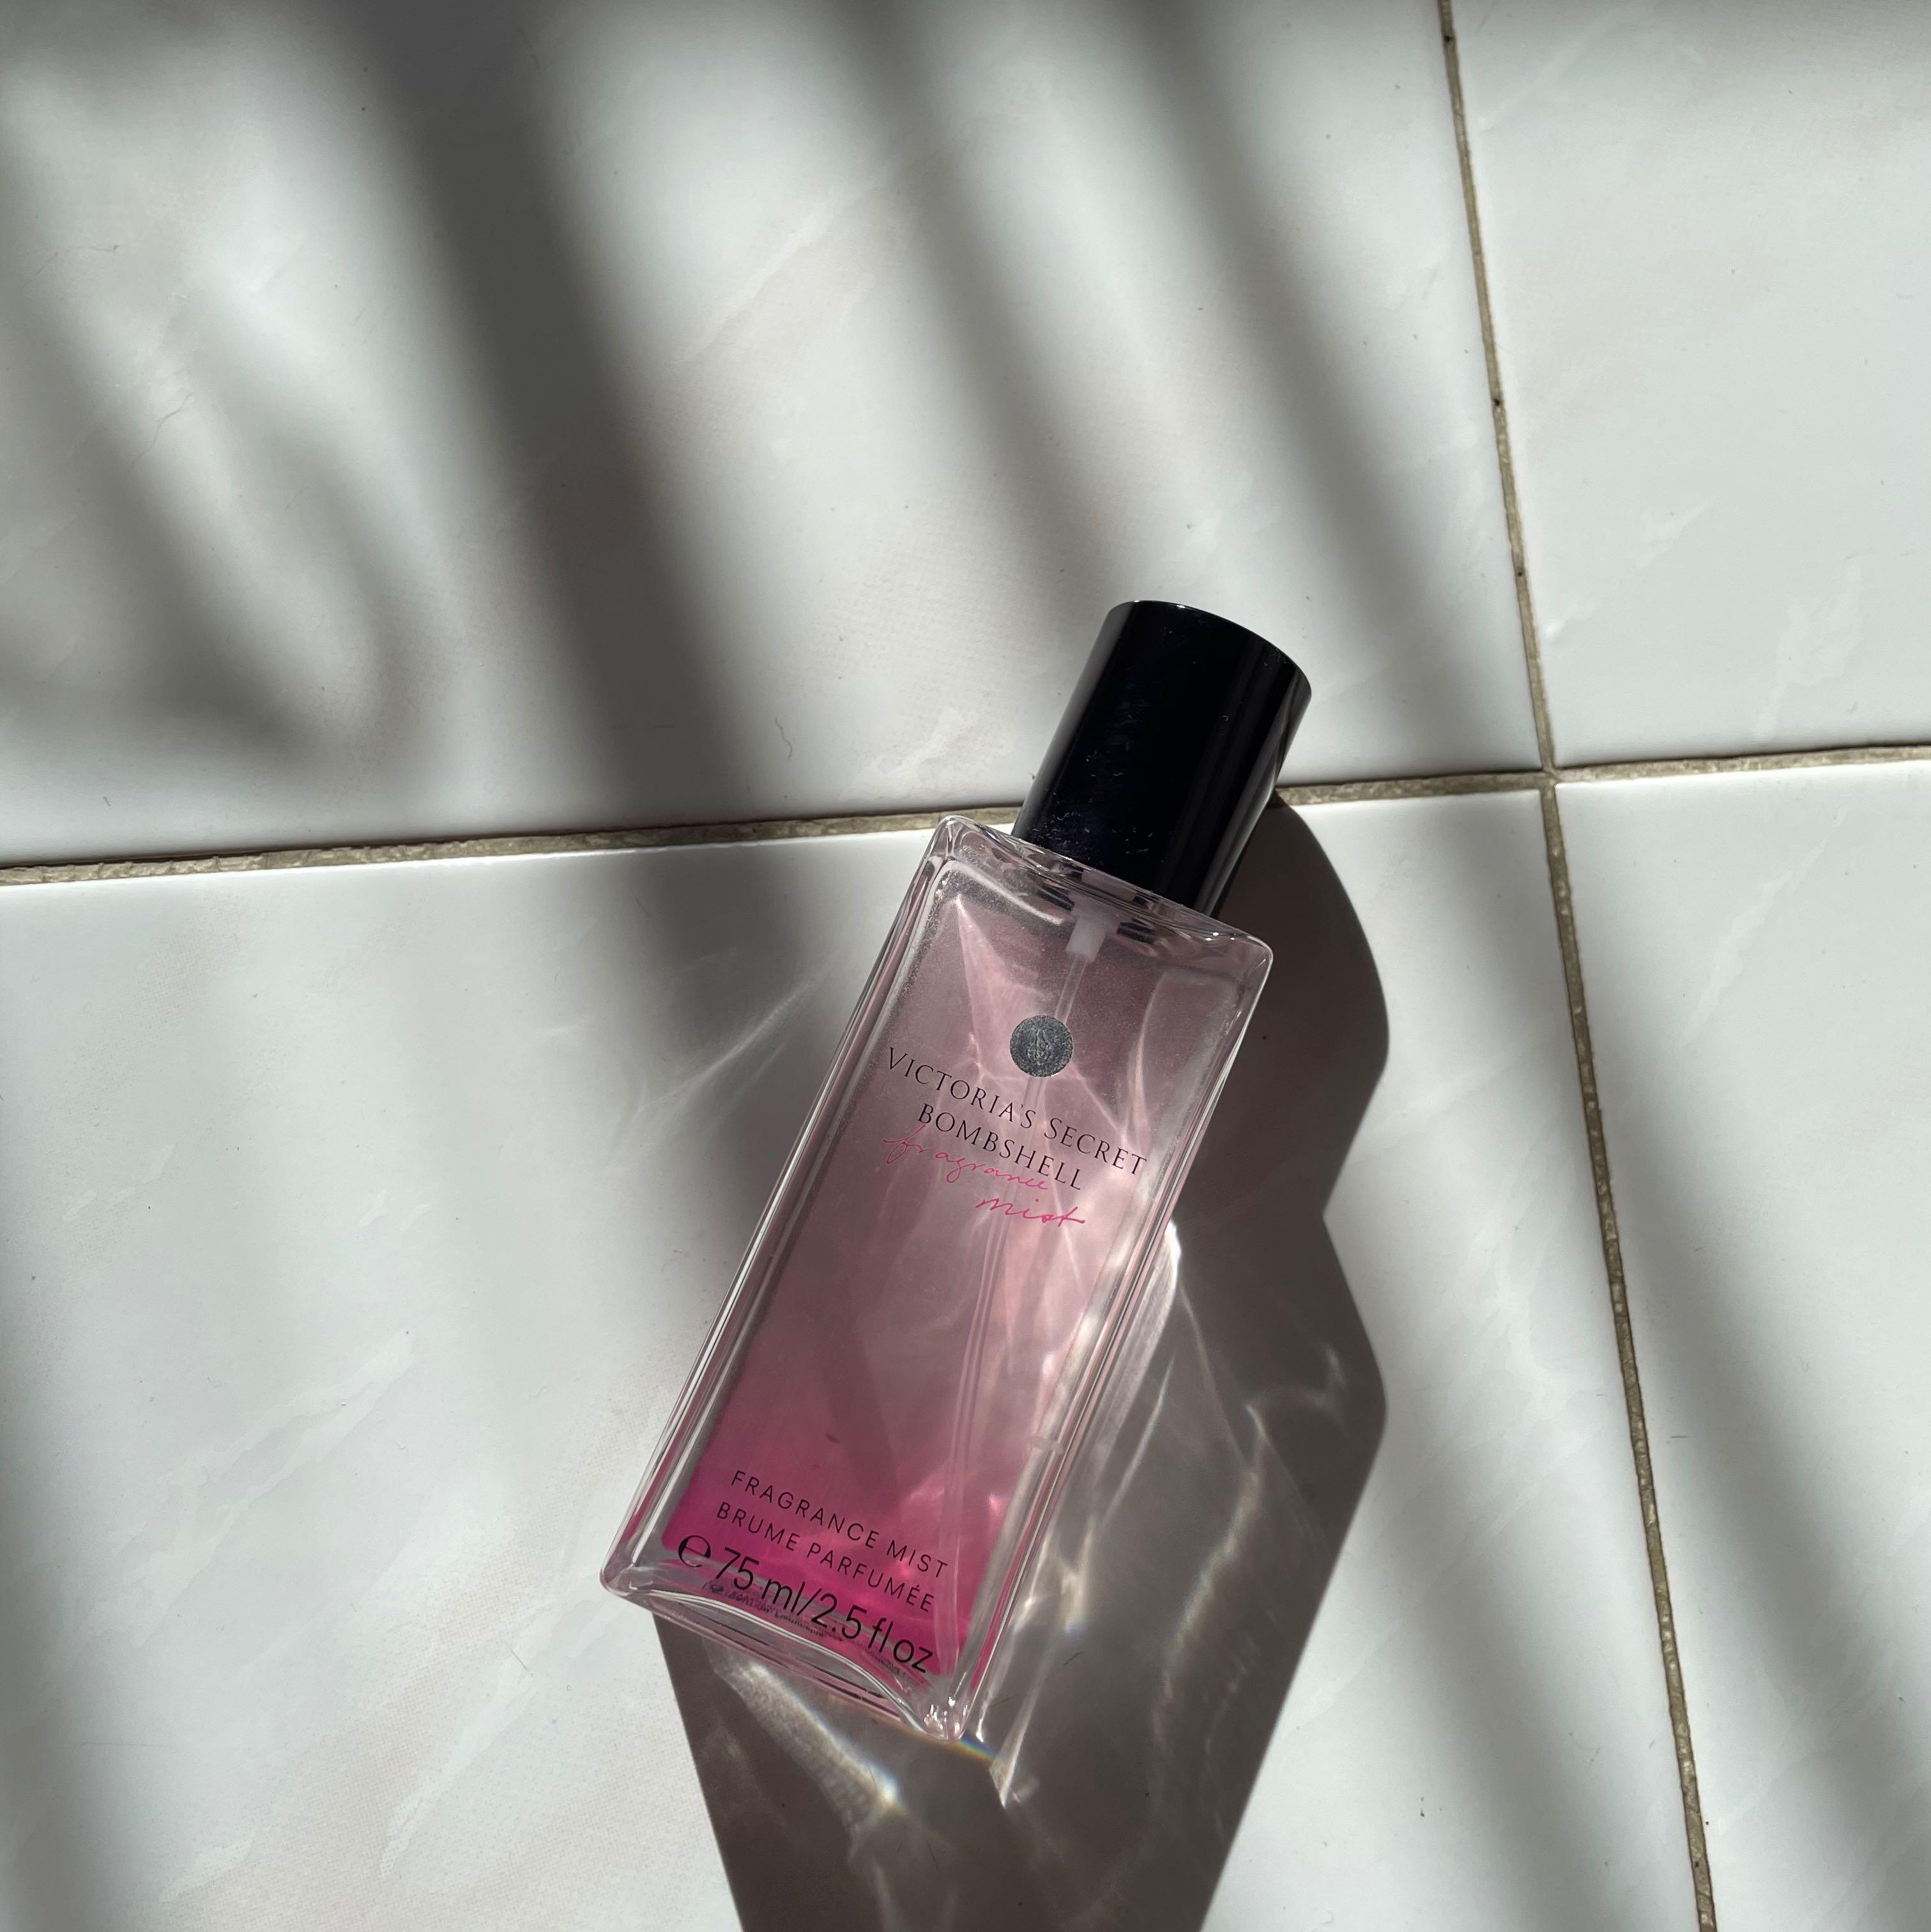 Victoria's Secret Bombshell Fragrance mist 75ml –